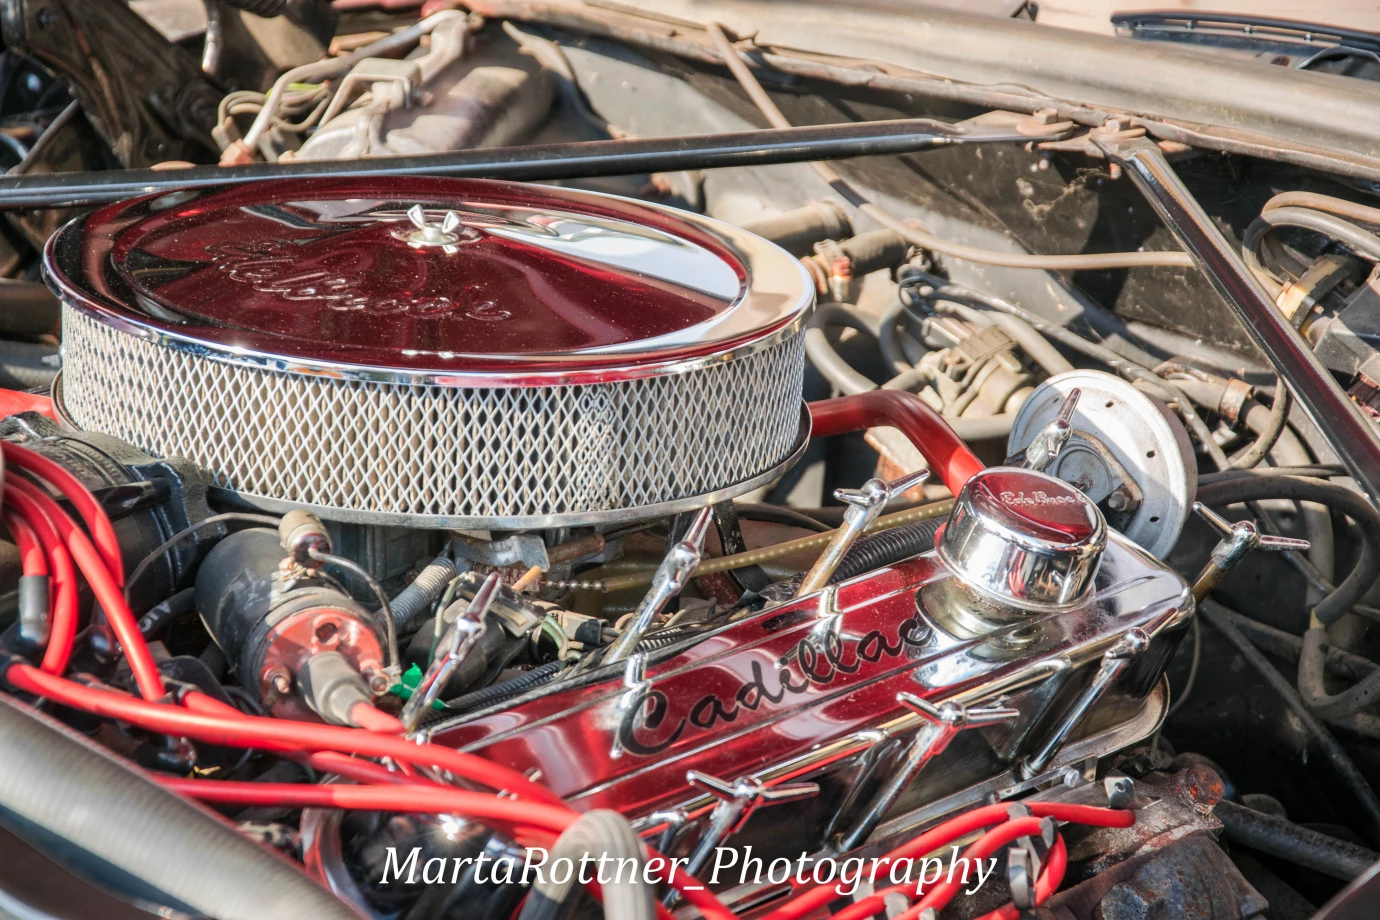 zdjęcia katowice fotograf marta-rottner portfolio zdjecia samochodow motorow motoryzacja